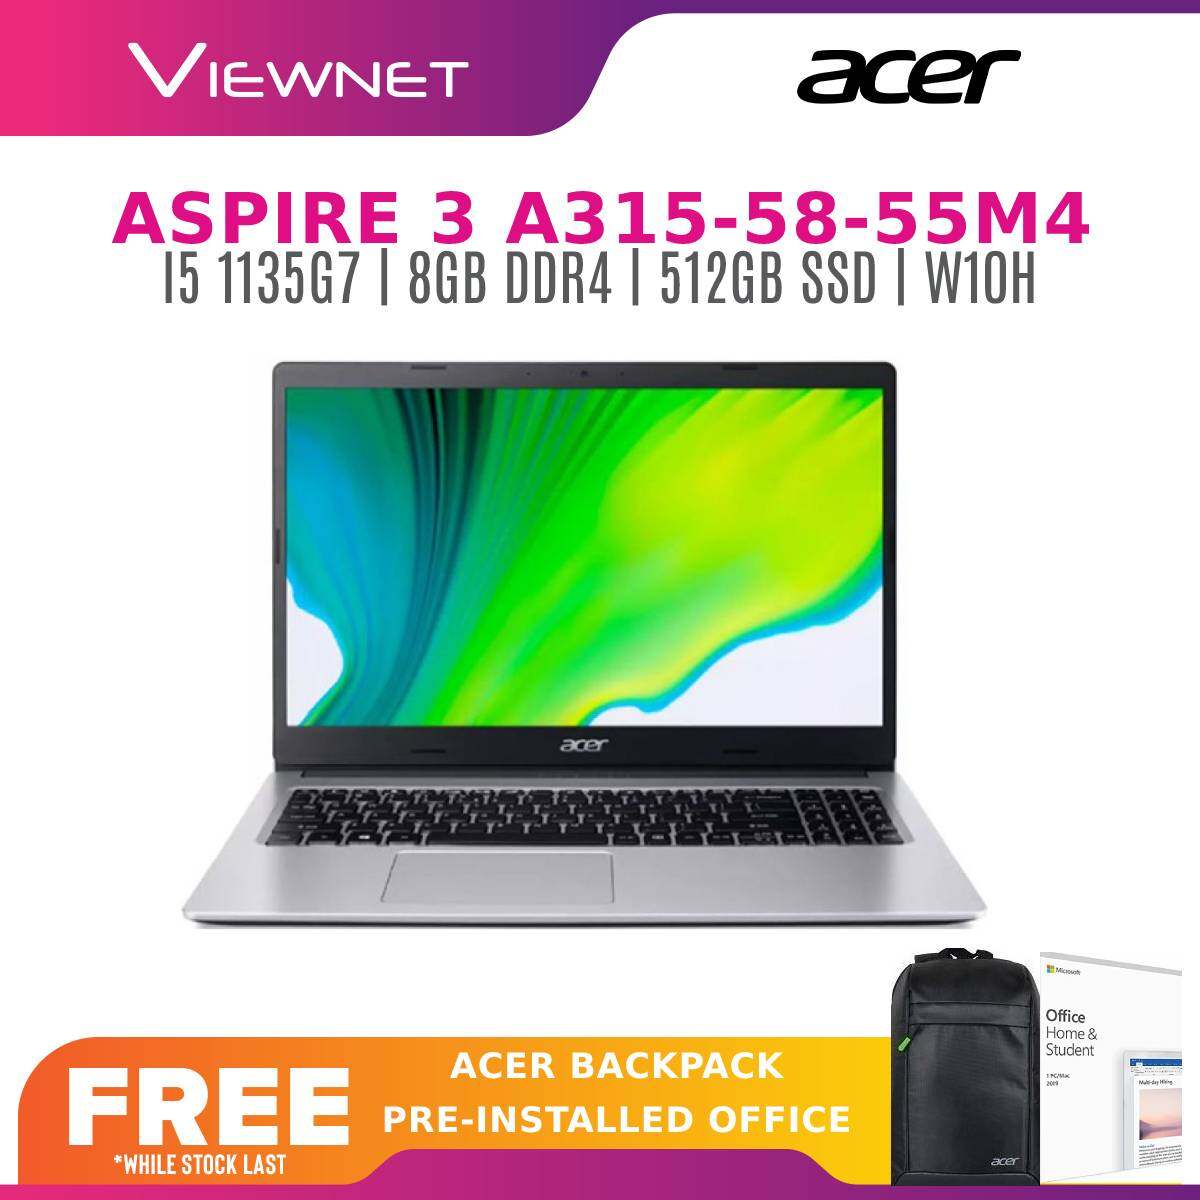 ACER ASPIRE 3 A315-58-74RB (I7 1165G7)/A315-58-576S (I5 1135G7)/A315-58-55M4 (I5 1135G7) (8GB DDR4/512GB SSD/INTEL IRIS XE/W10/15.6